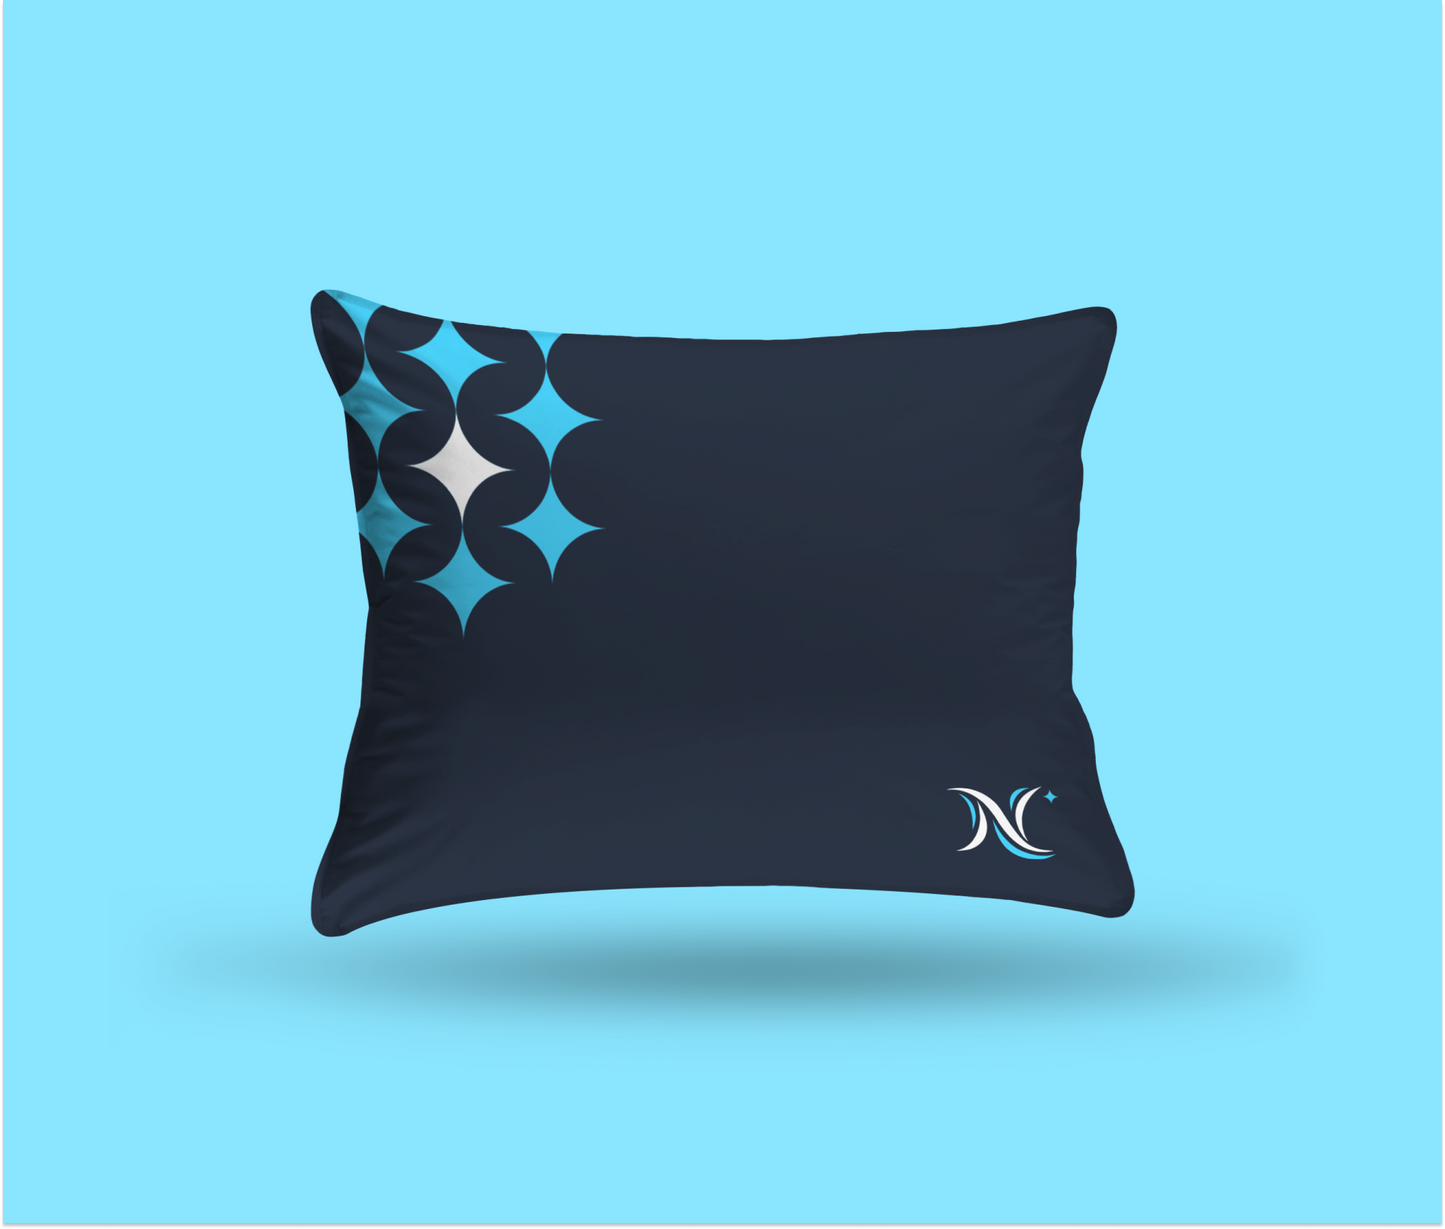 NorthStar Designed Grounding Pillowcase